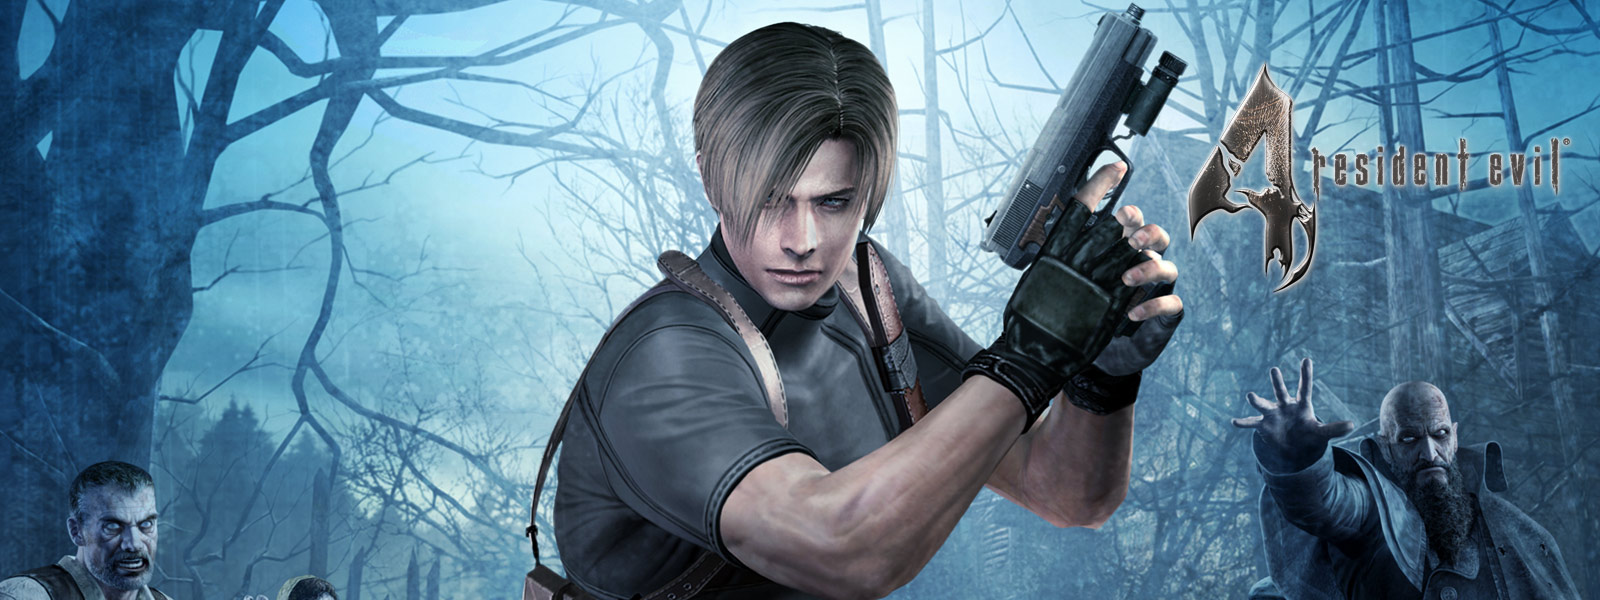 Resident Evil 4, uma personagem a empunhar uma pistola numa floresta escura, rodeada de zombies